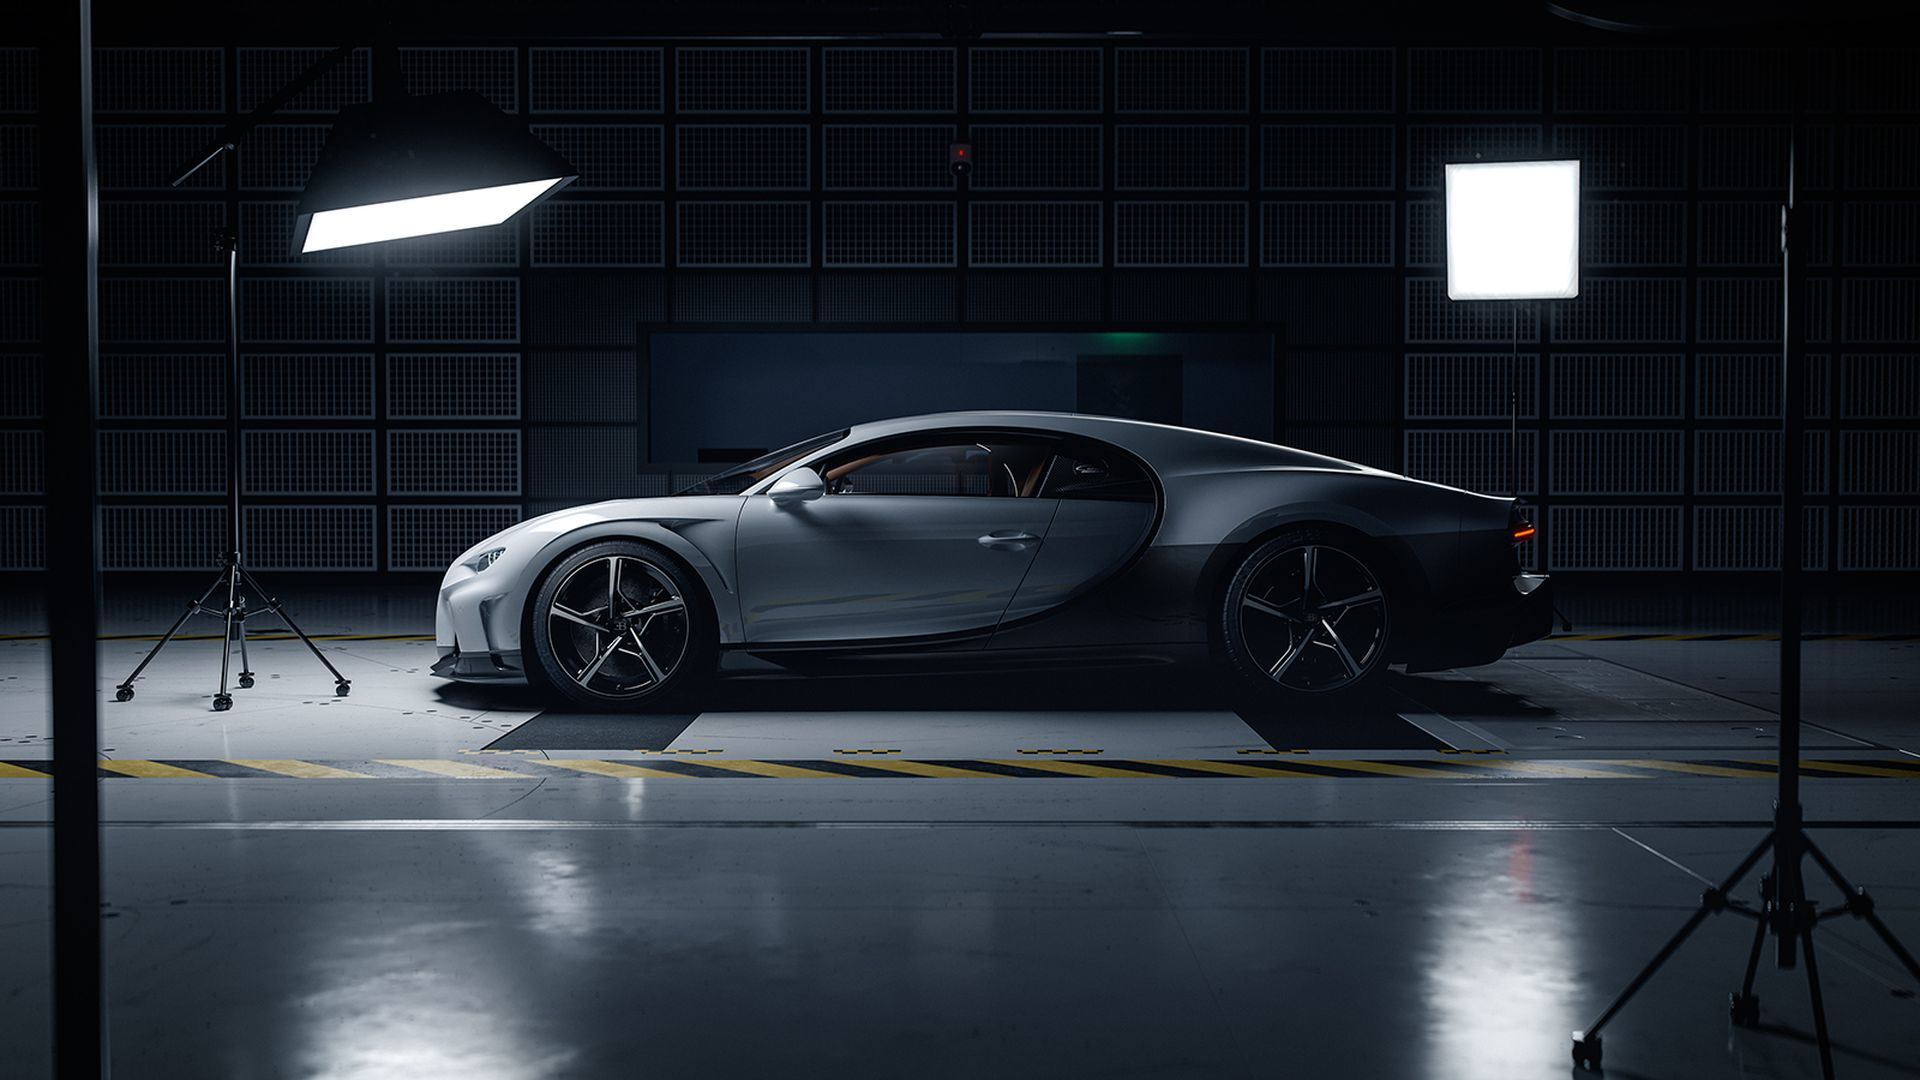 Bugatti Chiron Super Sport 2021 30